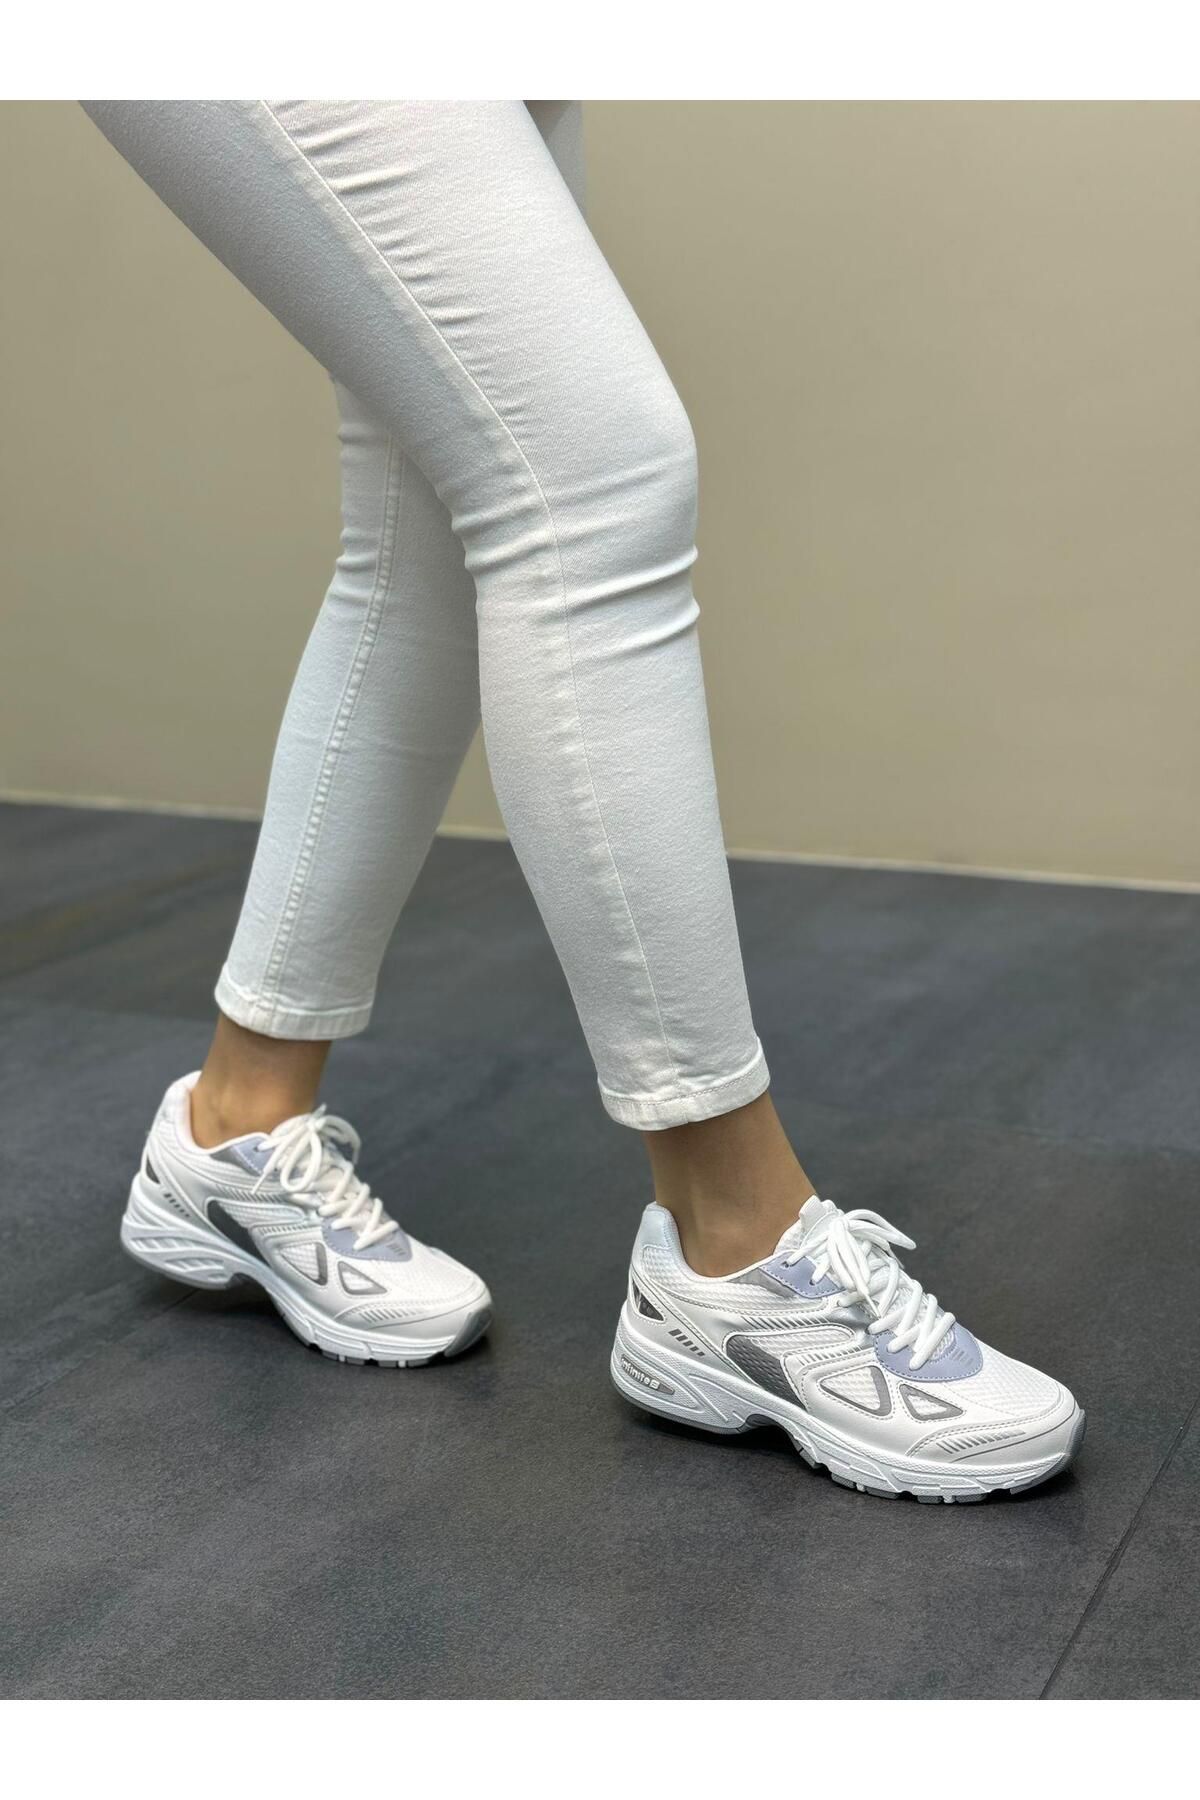 DİVA Diva Beyaz Kadın Günlük Spor Ayakkabı